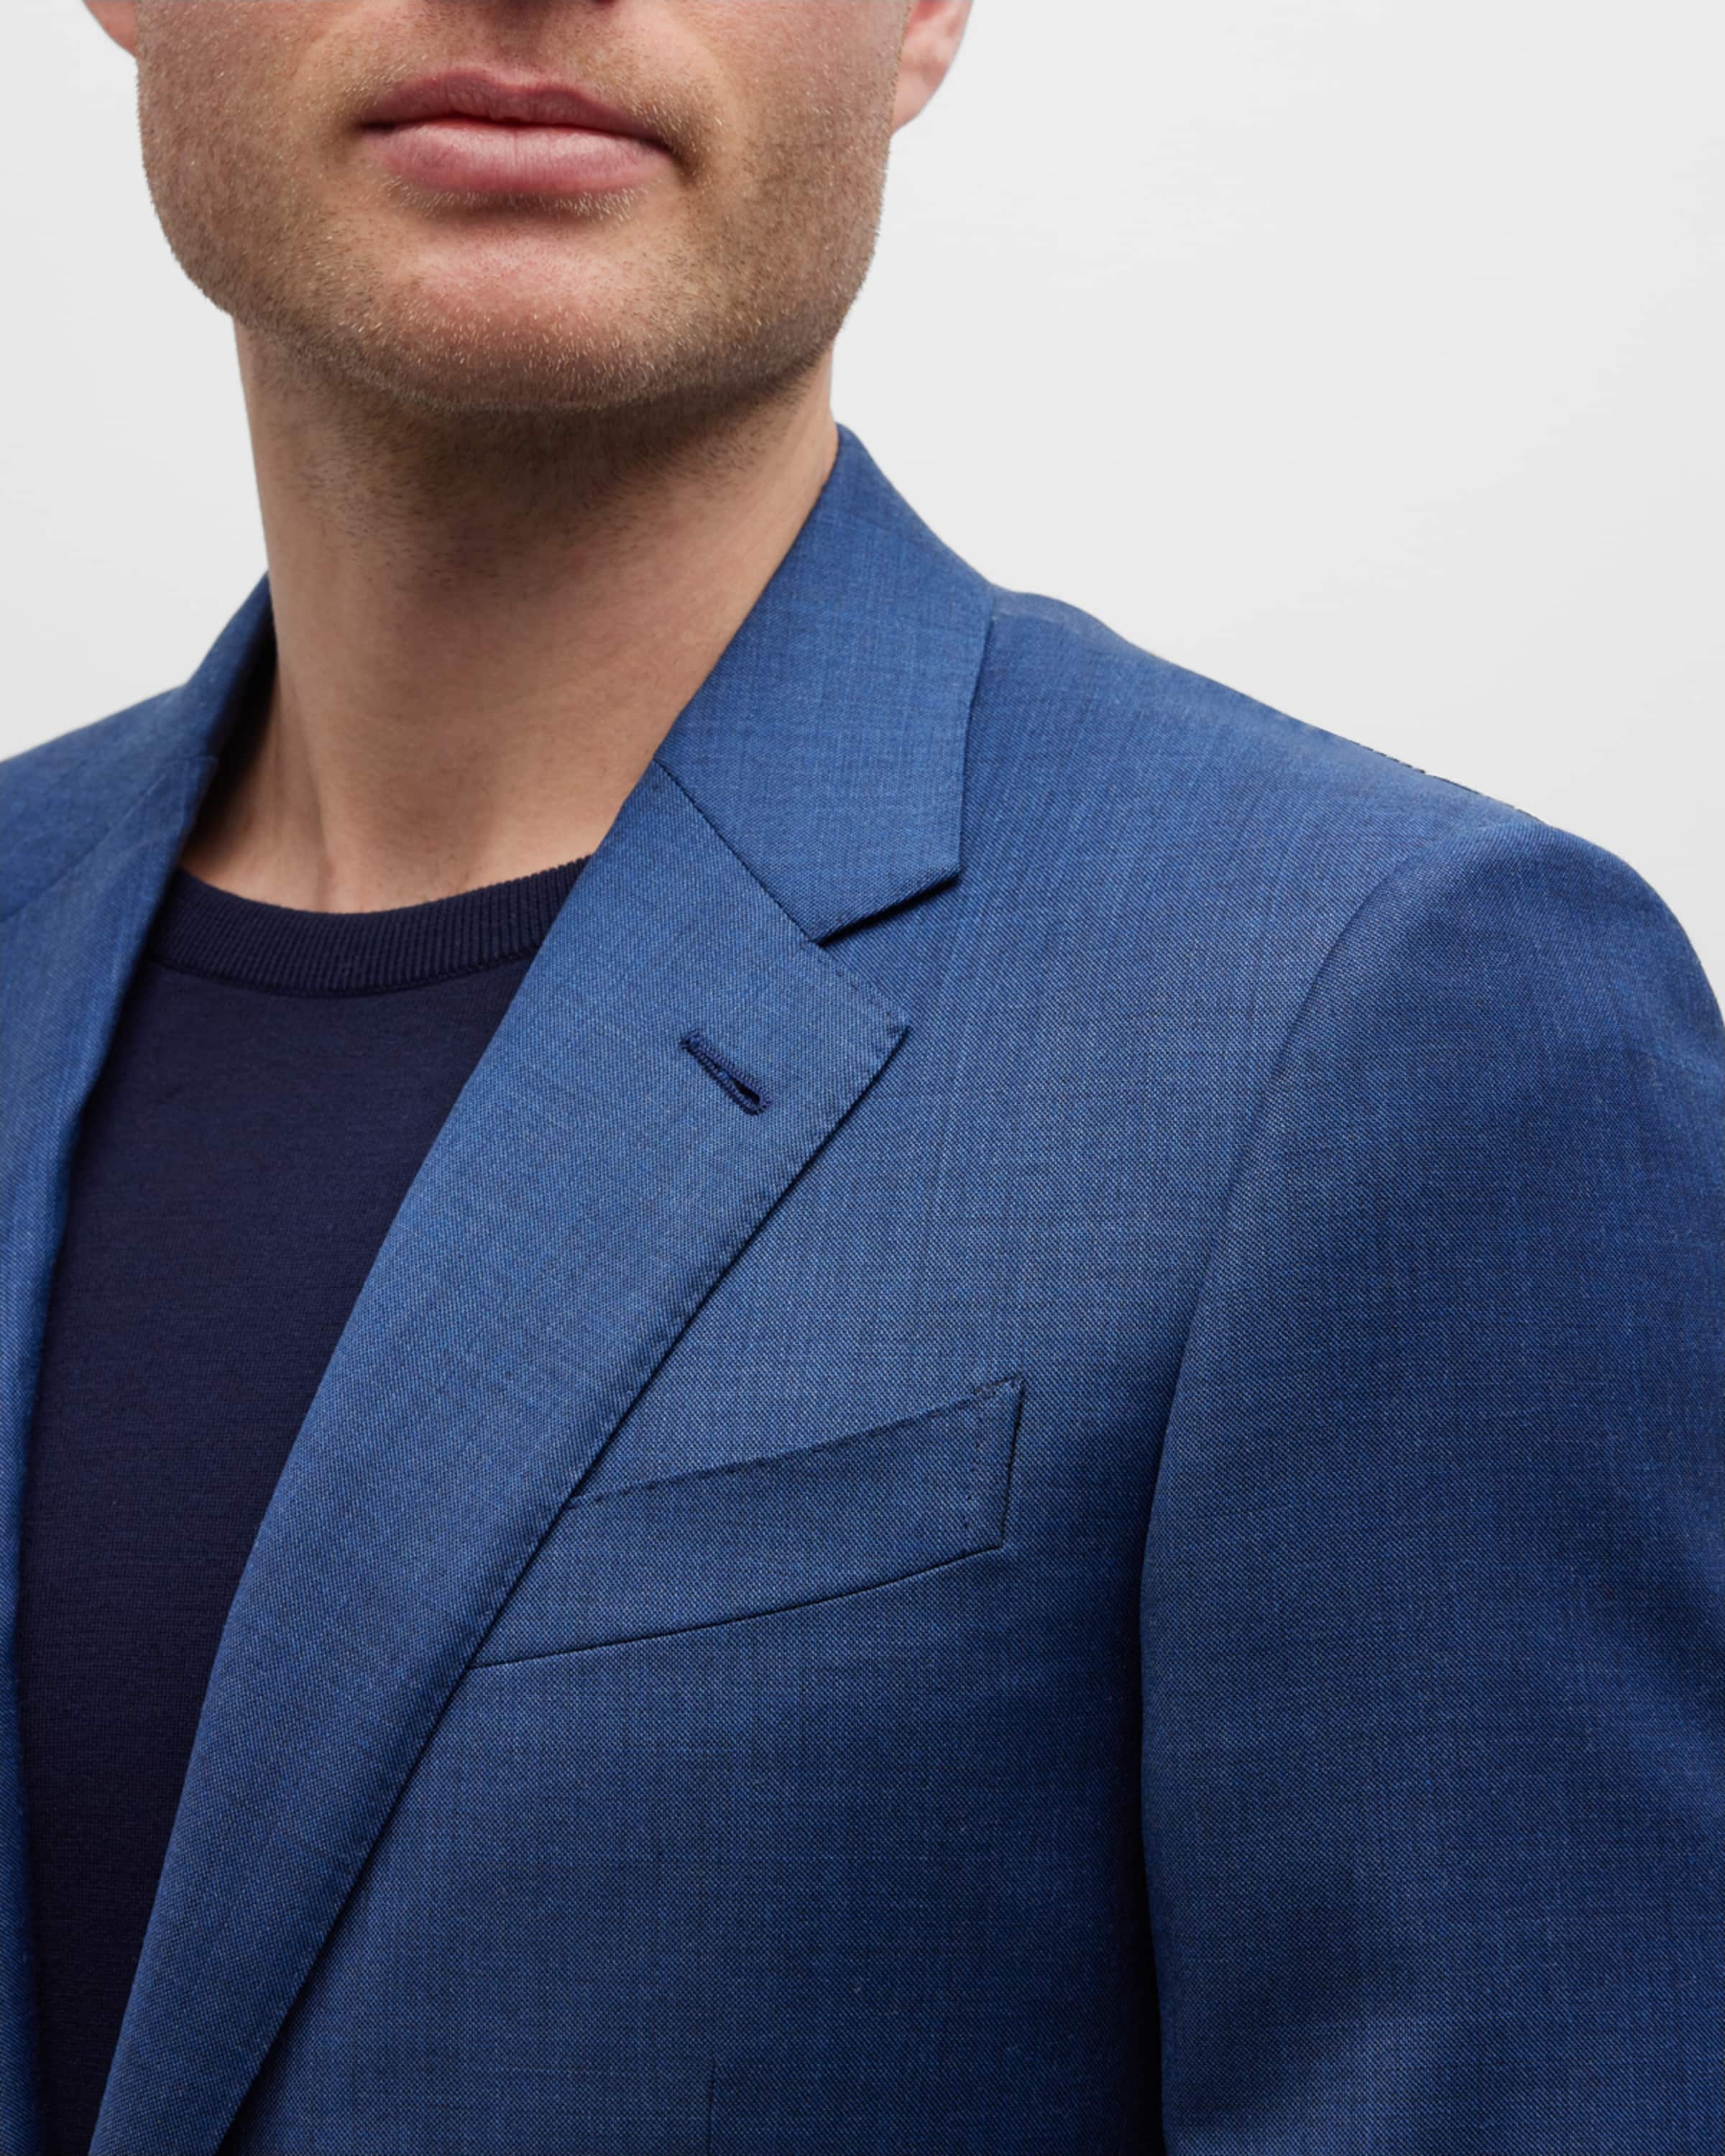 Men's Solid Wool Classic-Fit Suit - 2